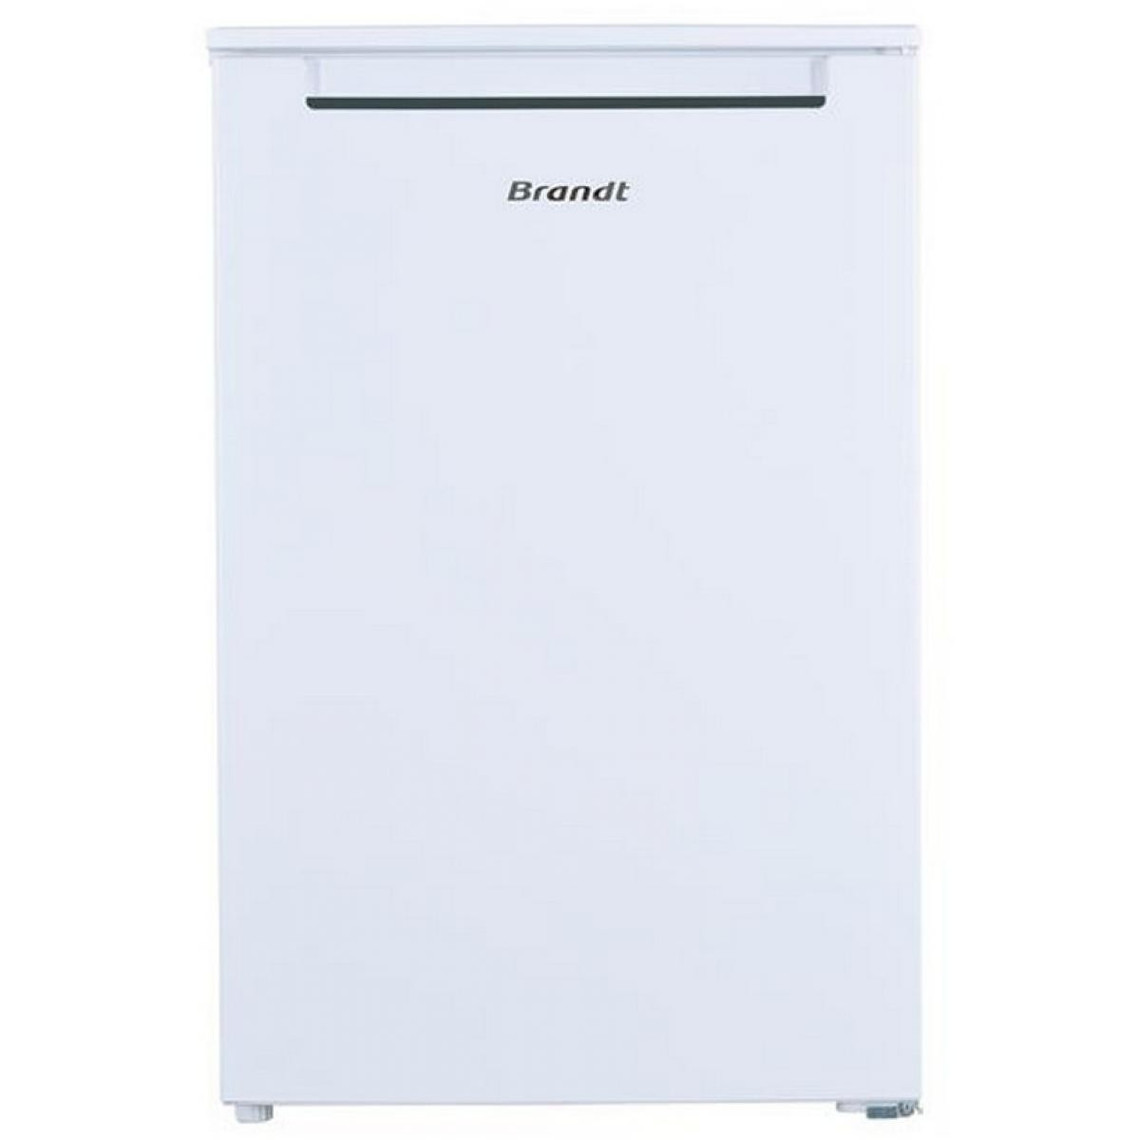 Brandt Réfrigérateur table top 55cm 116l blanc - bst524esw - BRANDT